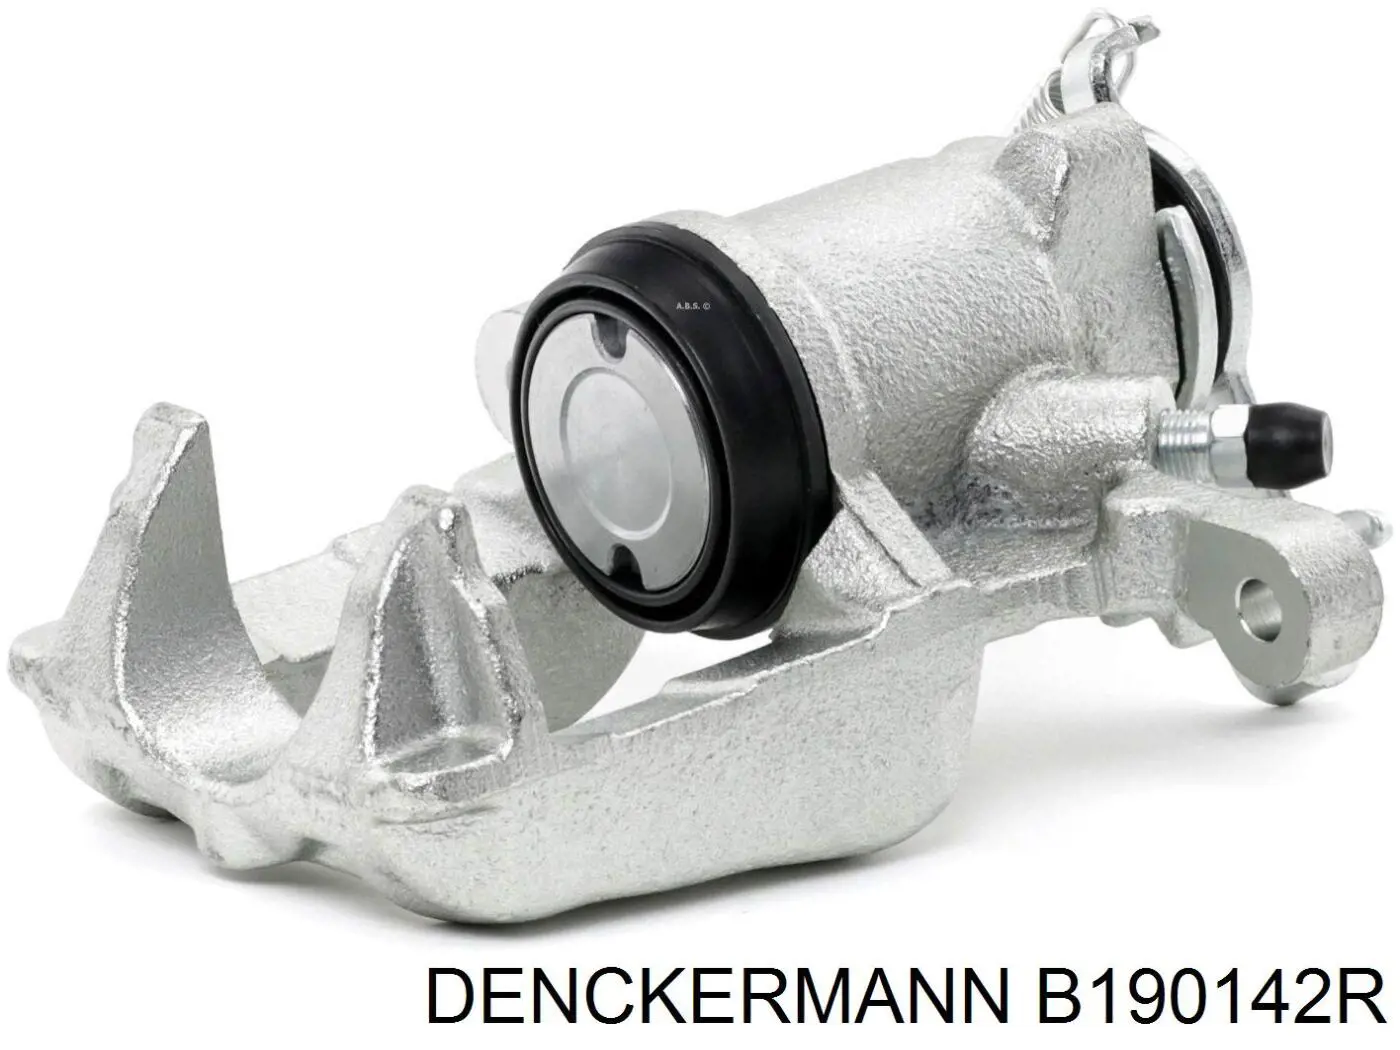 B190142R Denckermann pinza de freno trasero derecho